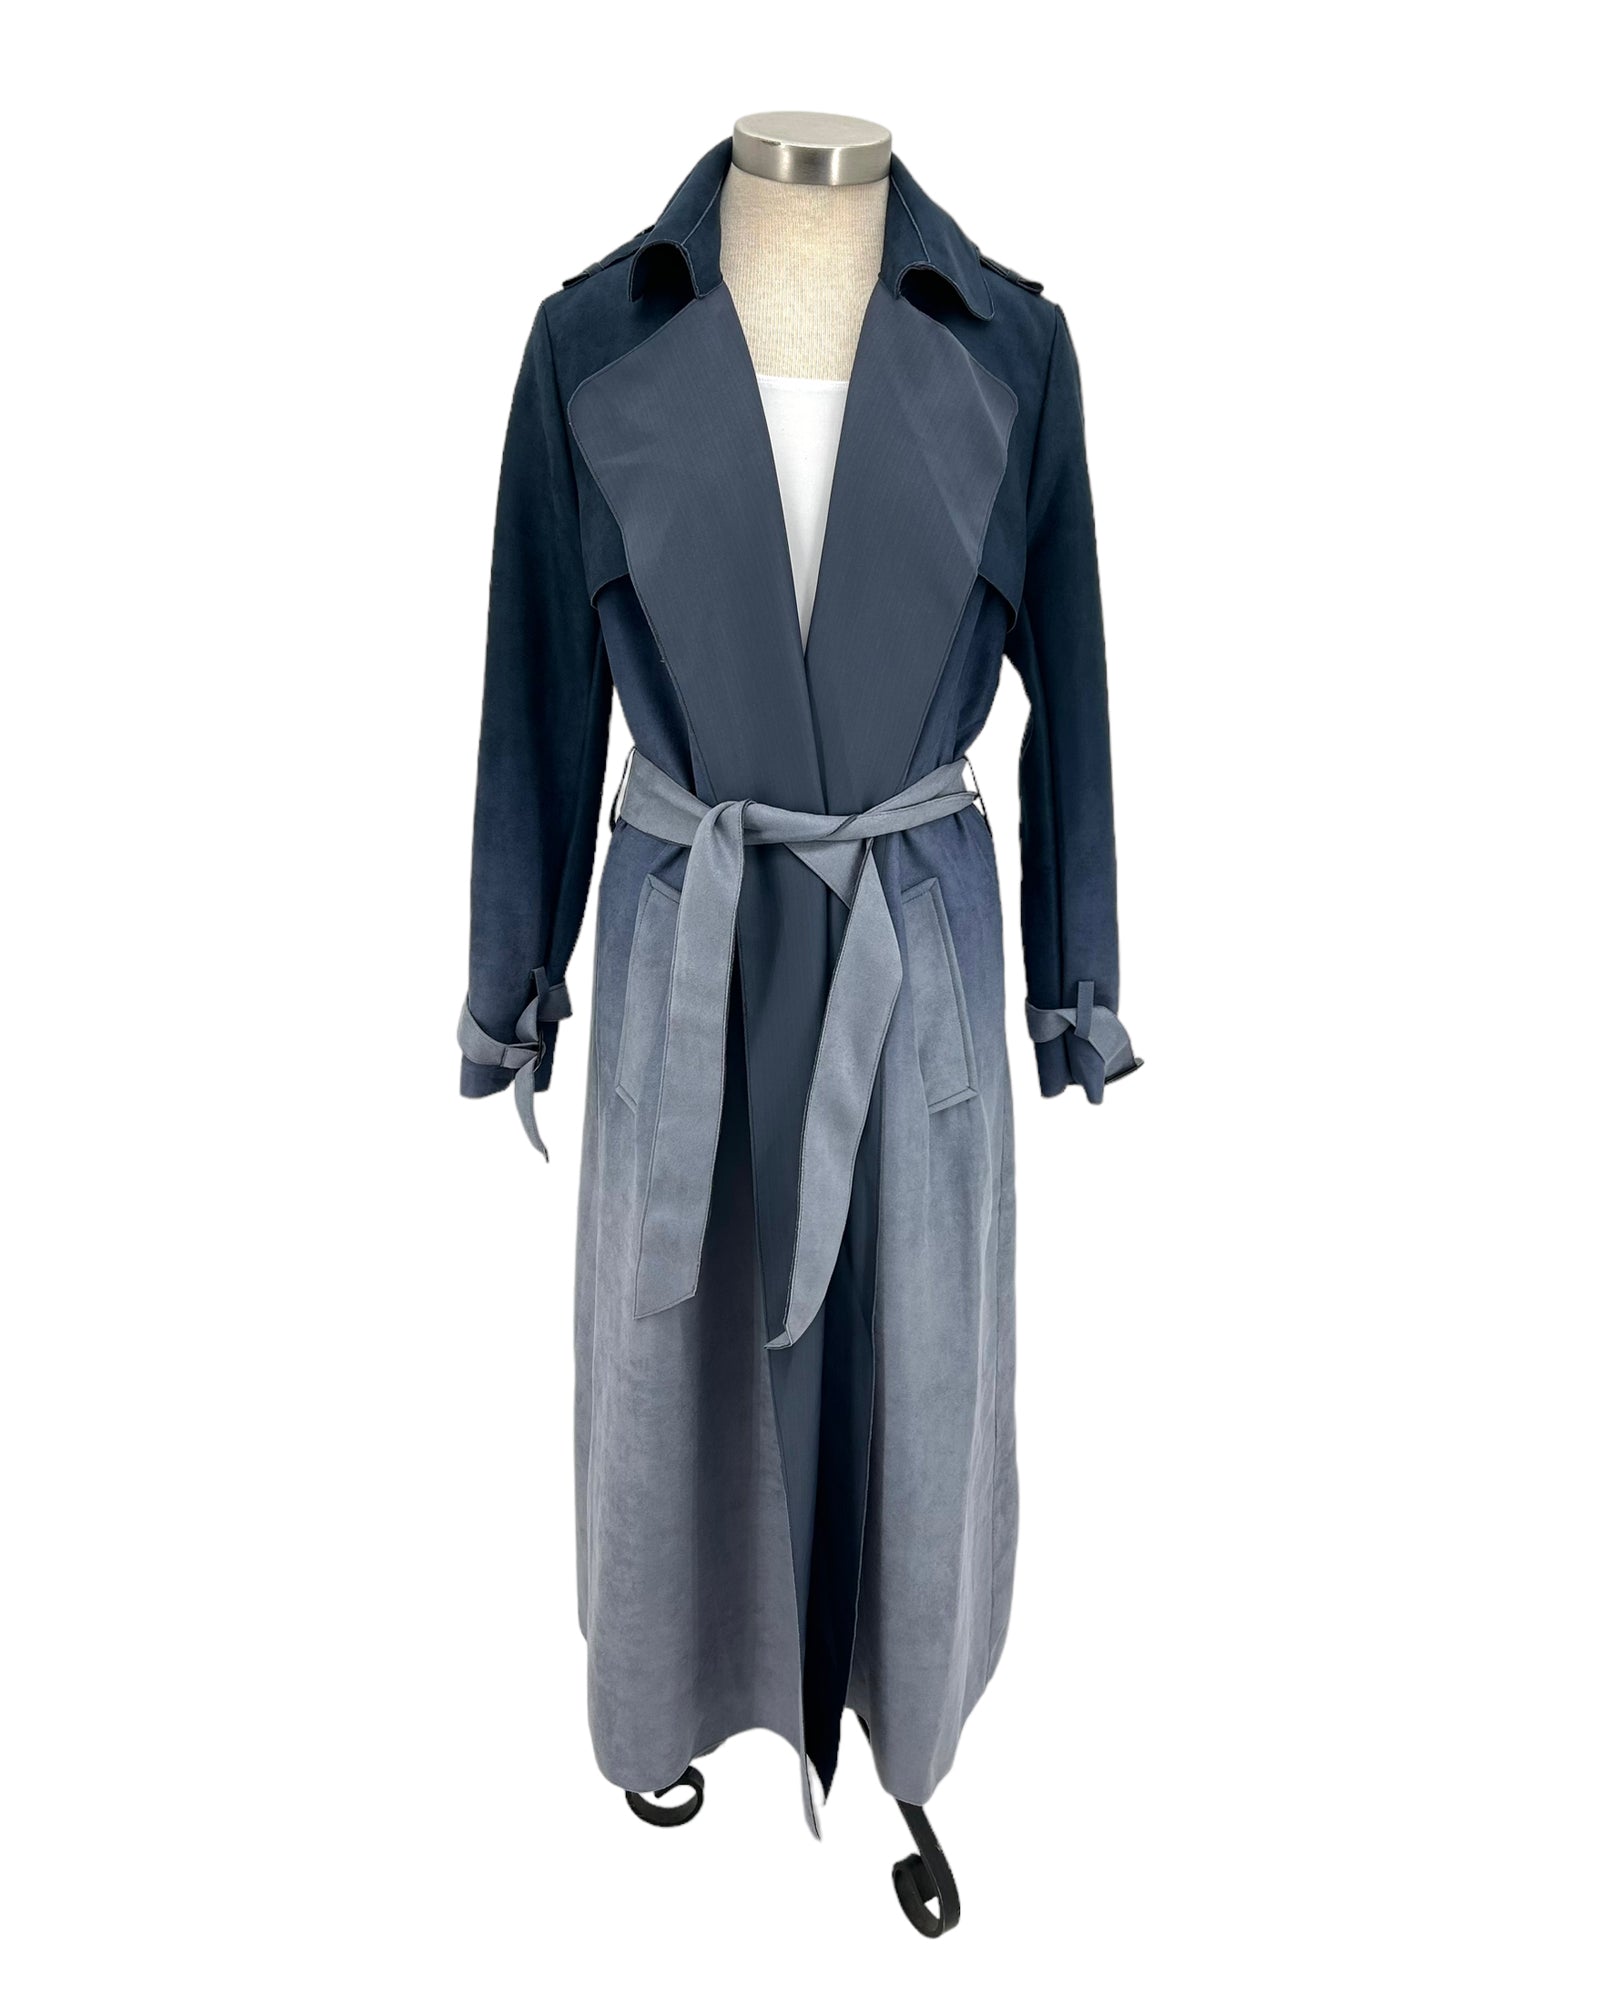 RADZOLI 18578 OMBRE TRENCH COAT | Ladies Blue Trench Coat – The ...